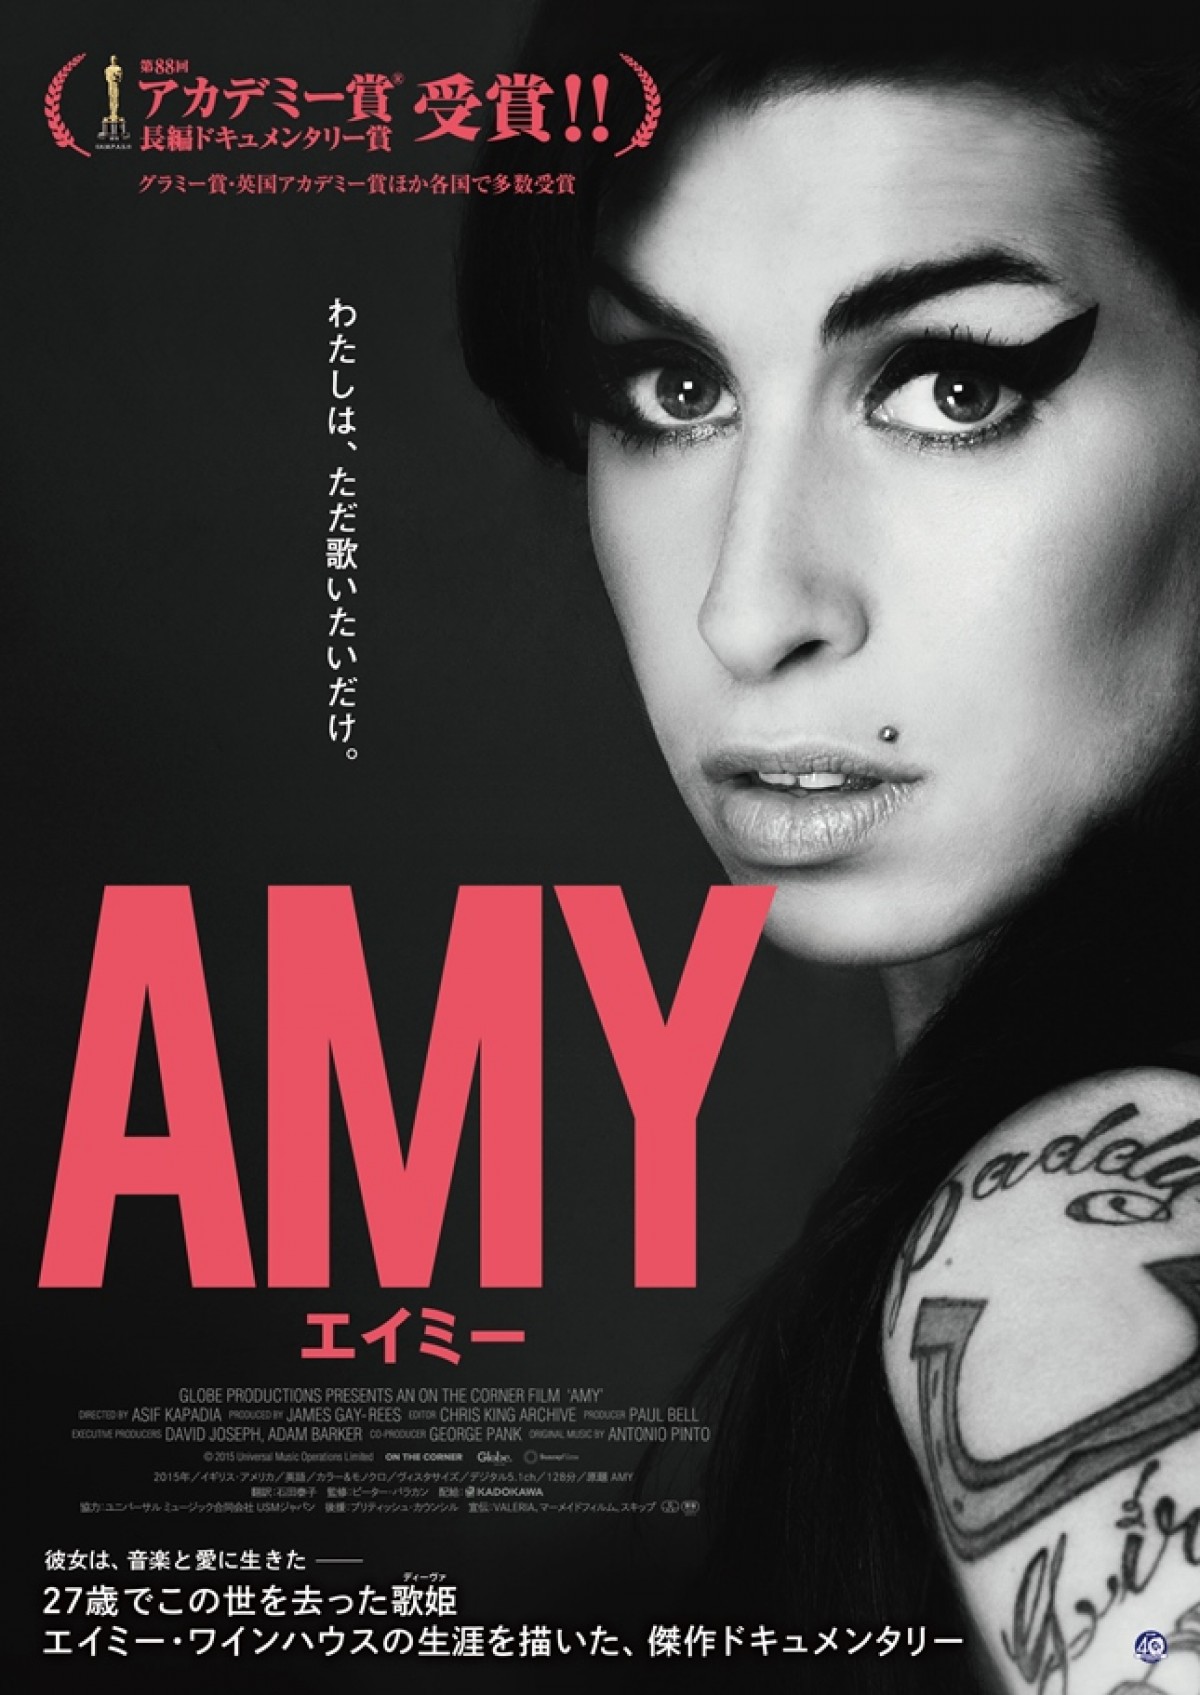 『AMY エイミー』ポスタービジュアル公開